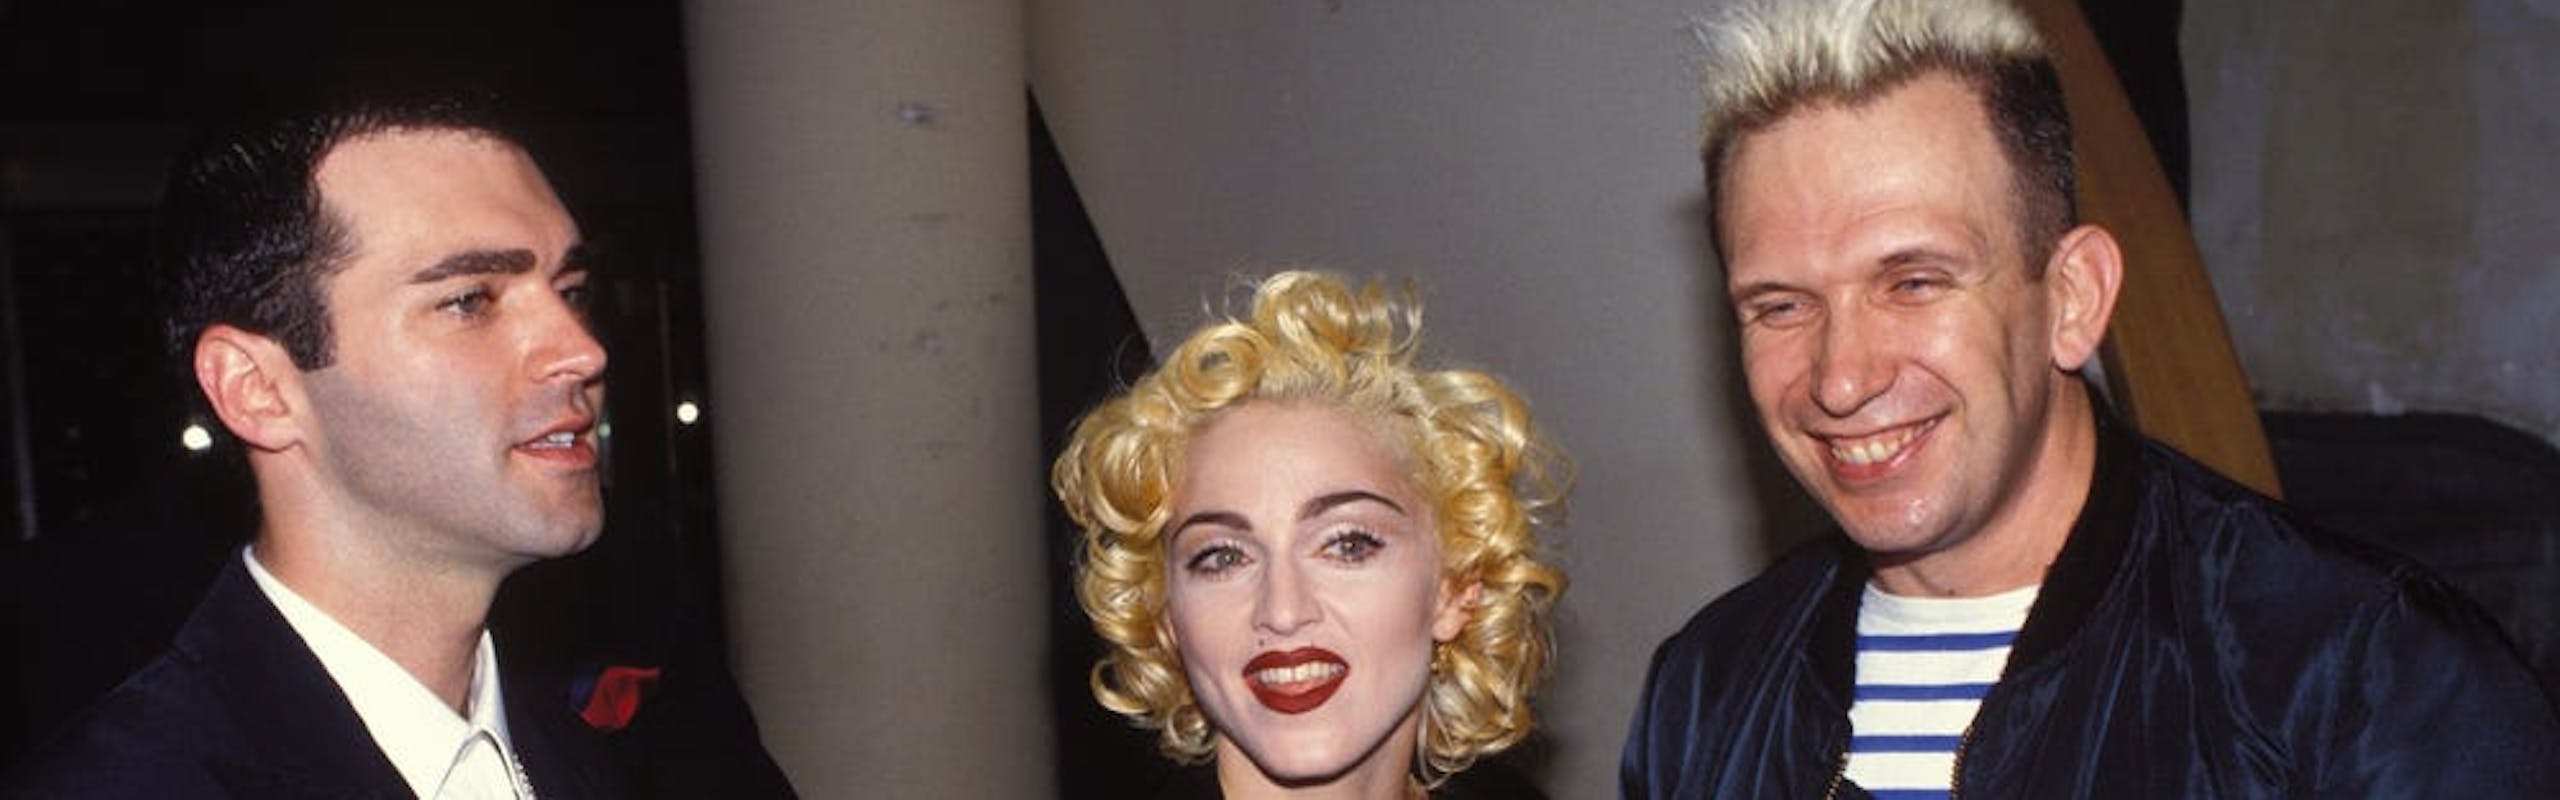 Jean Paul Gaultier insieme a Madonna